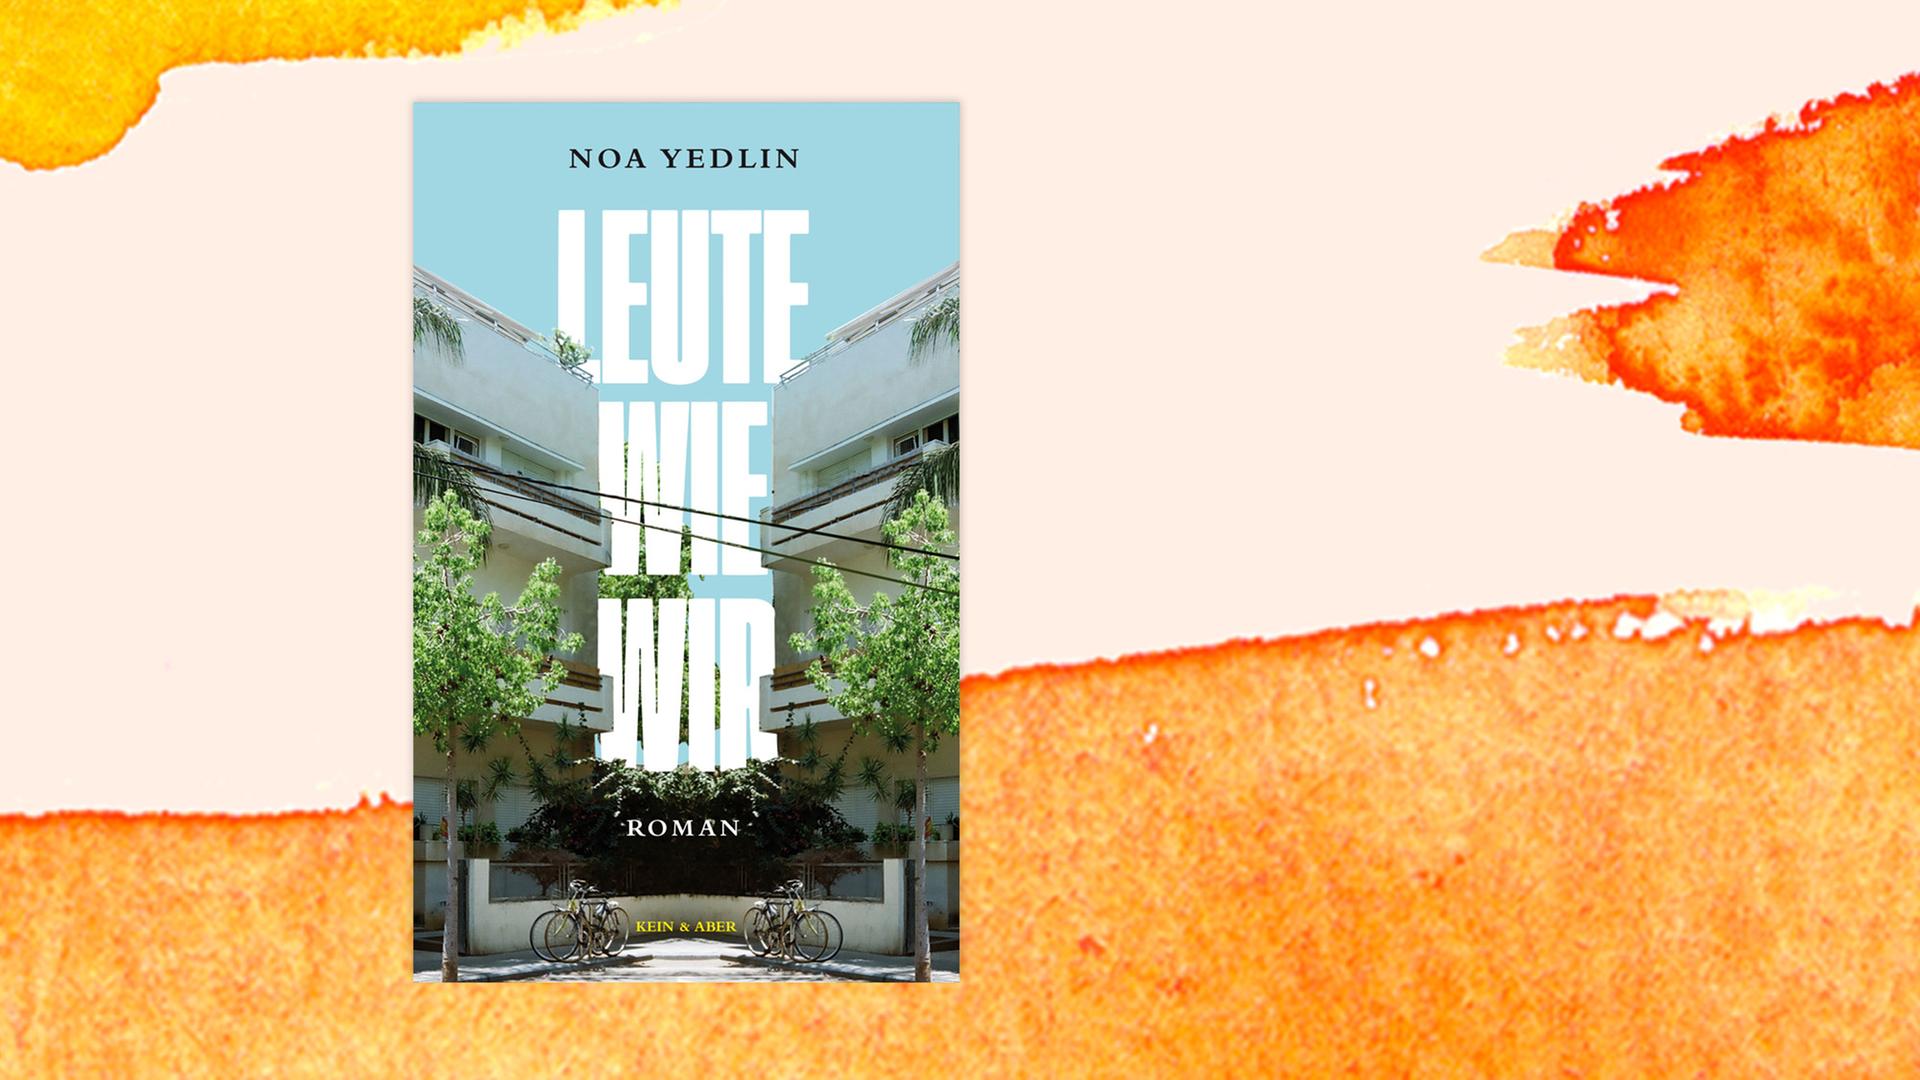 Das Cover von Noa Yedlins Roman "Leute wie wir" auf pastellfarbenem Untergrund